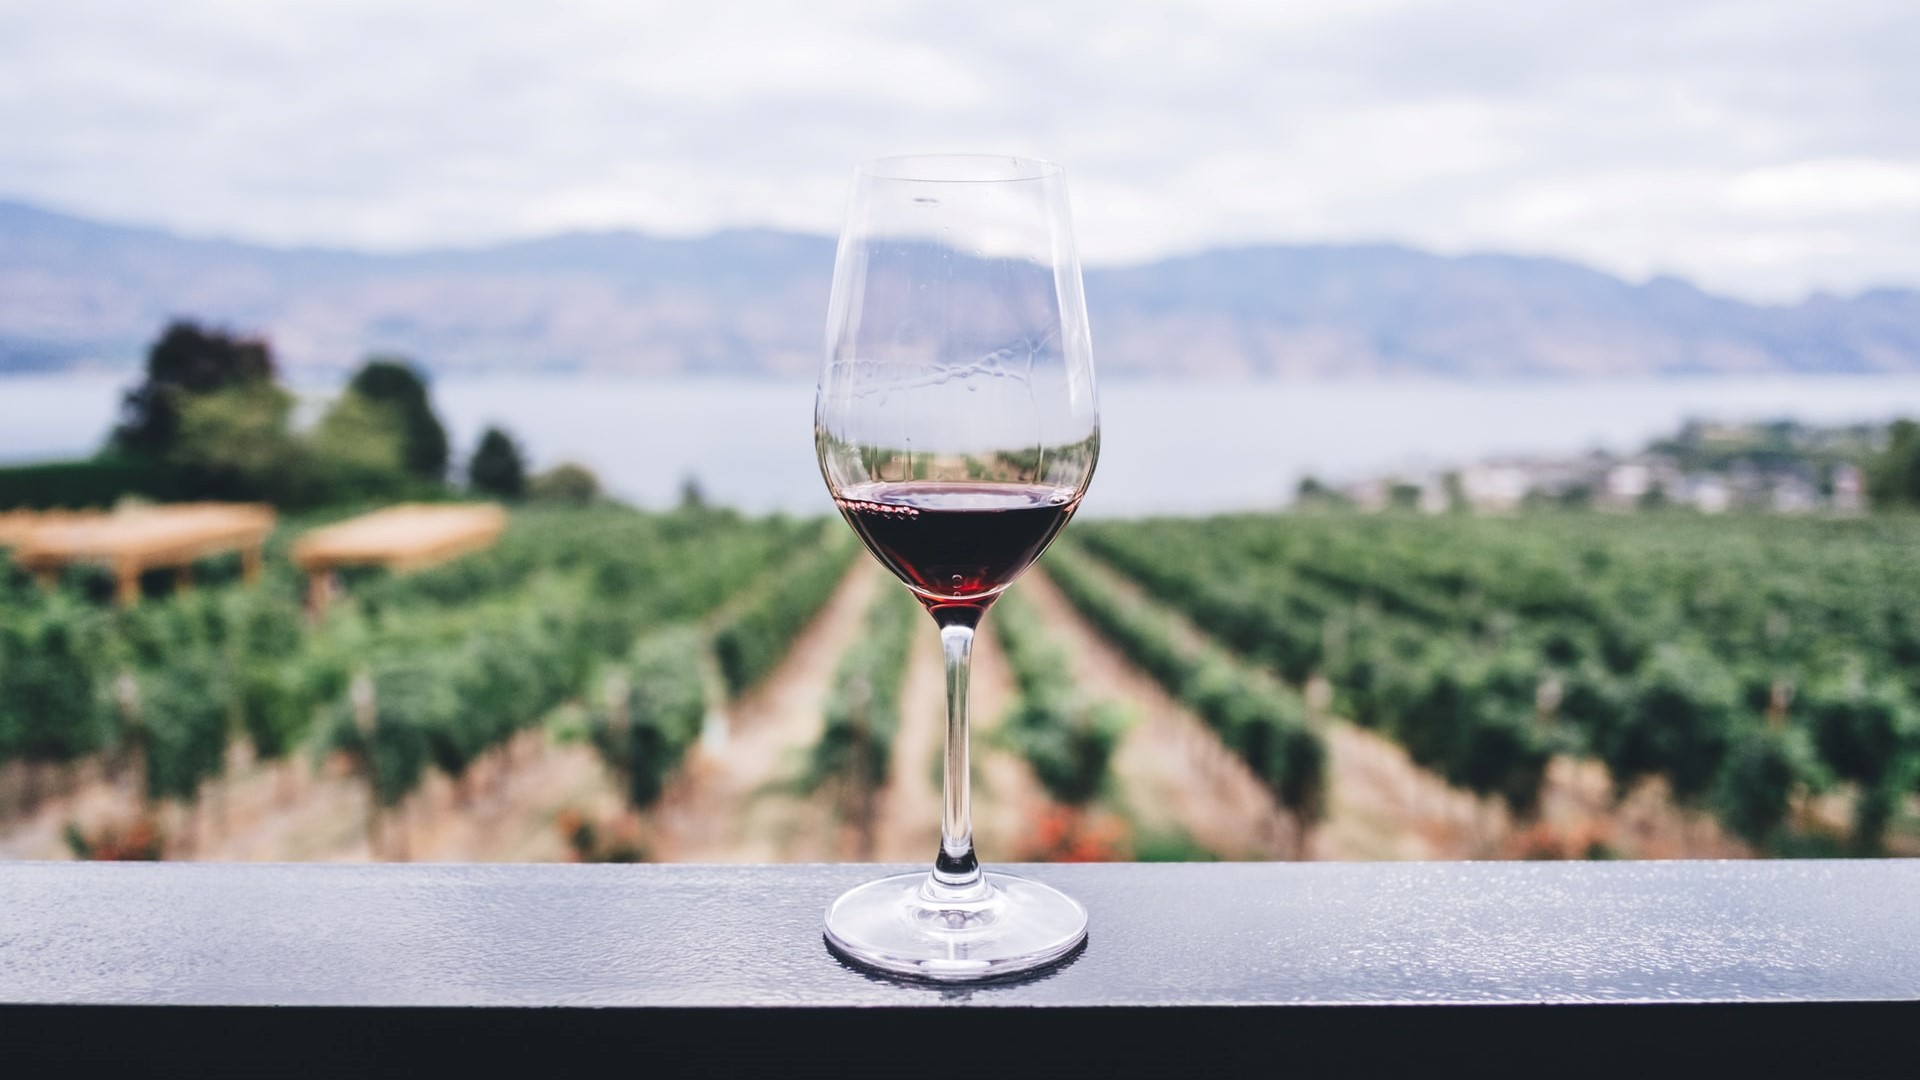 En España, el vino es sinónimo de buenos momentos.